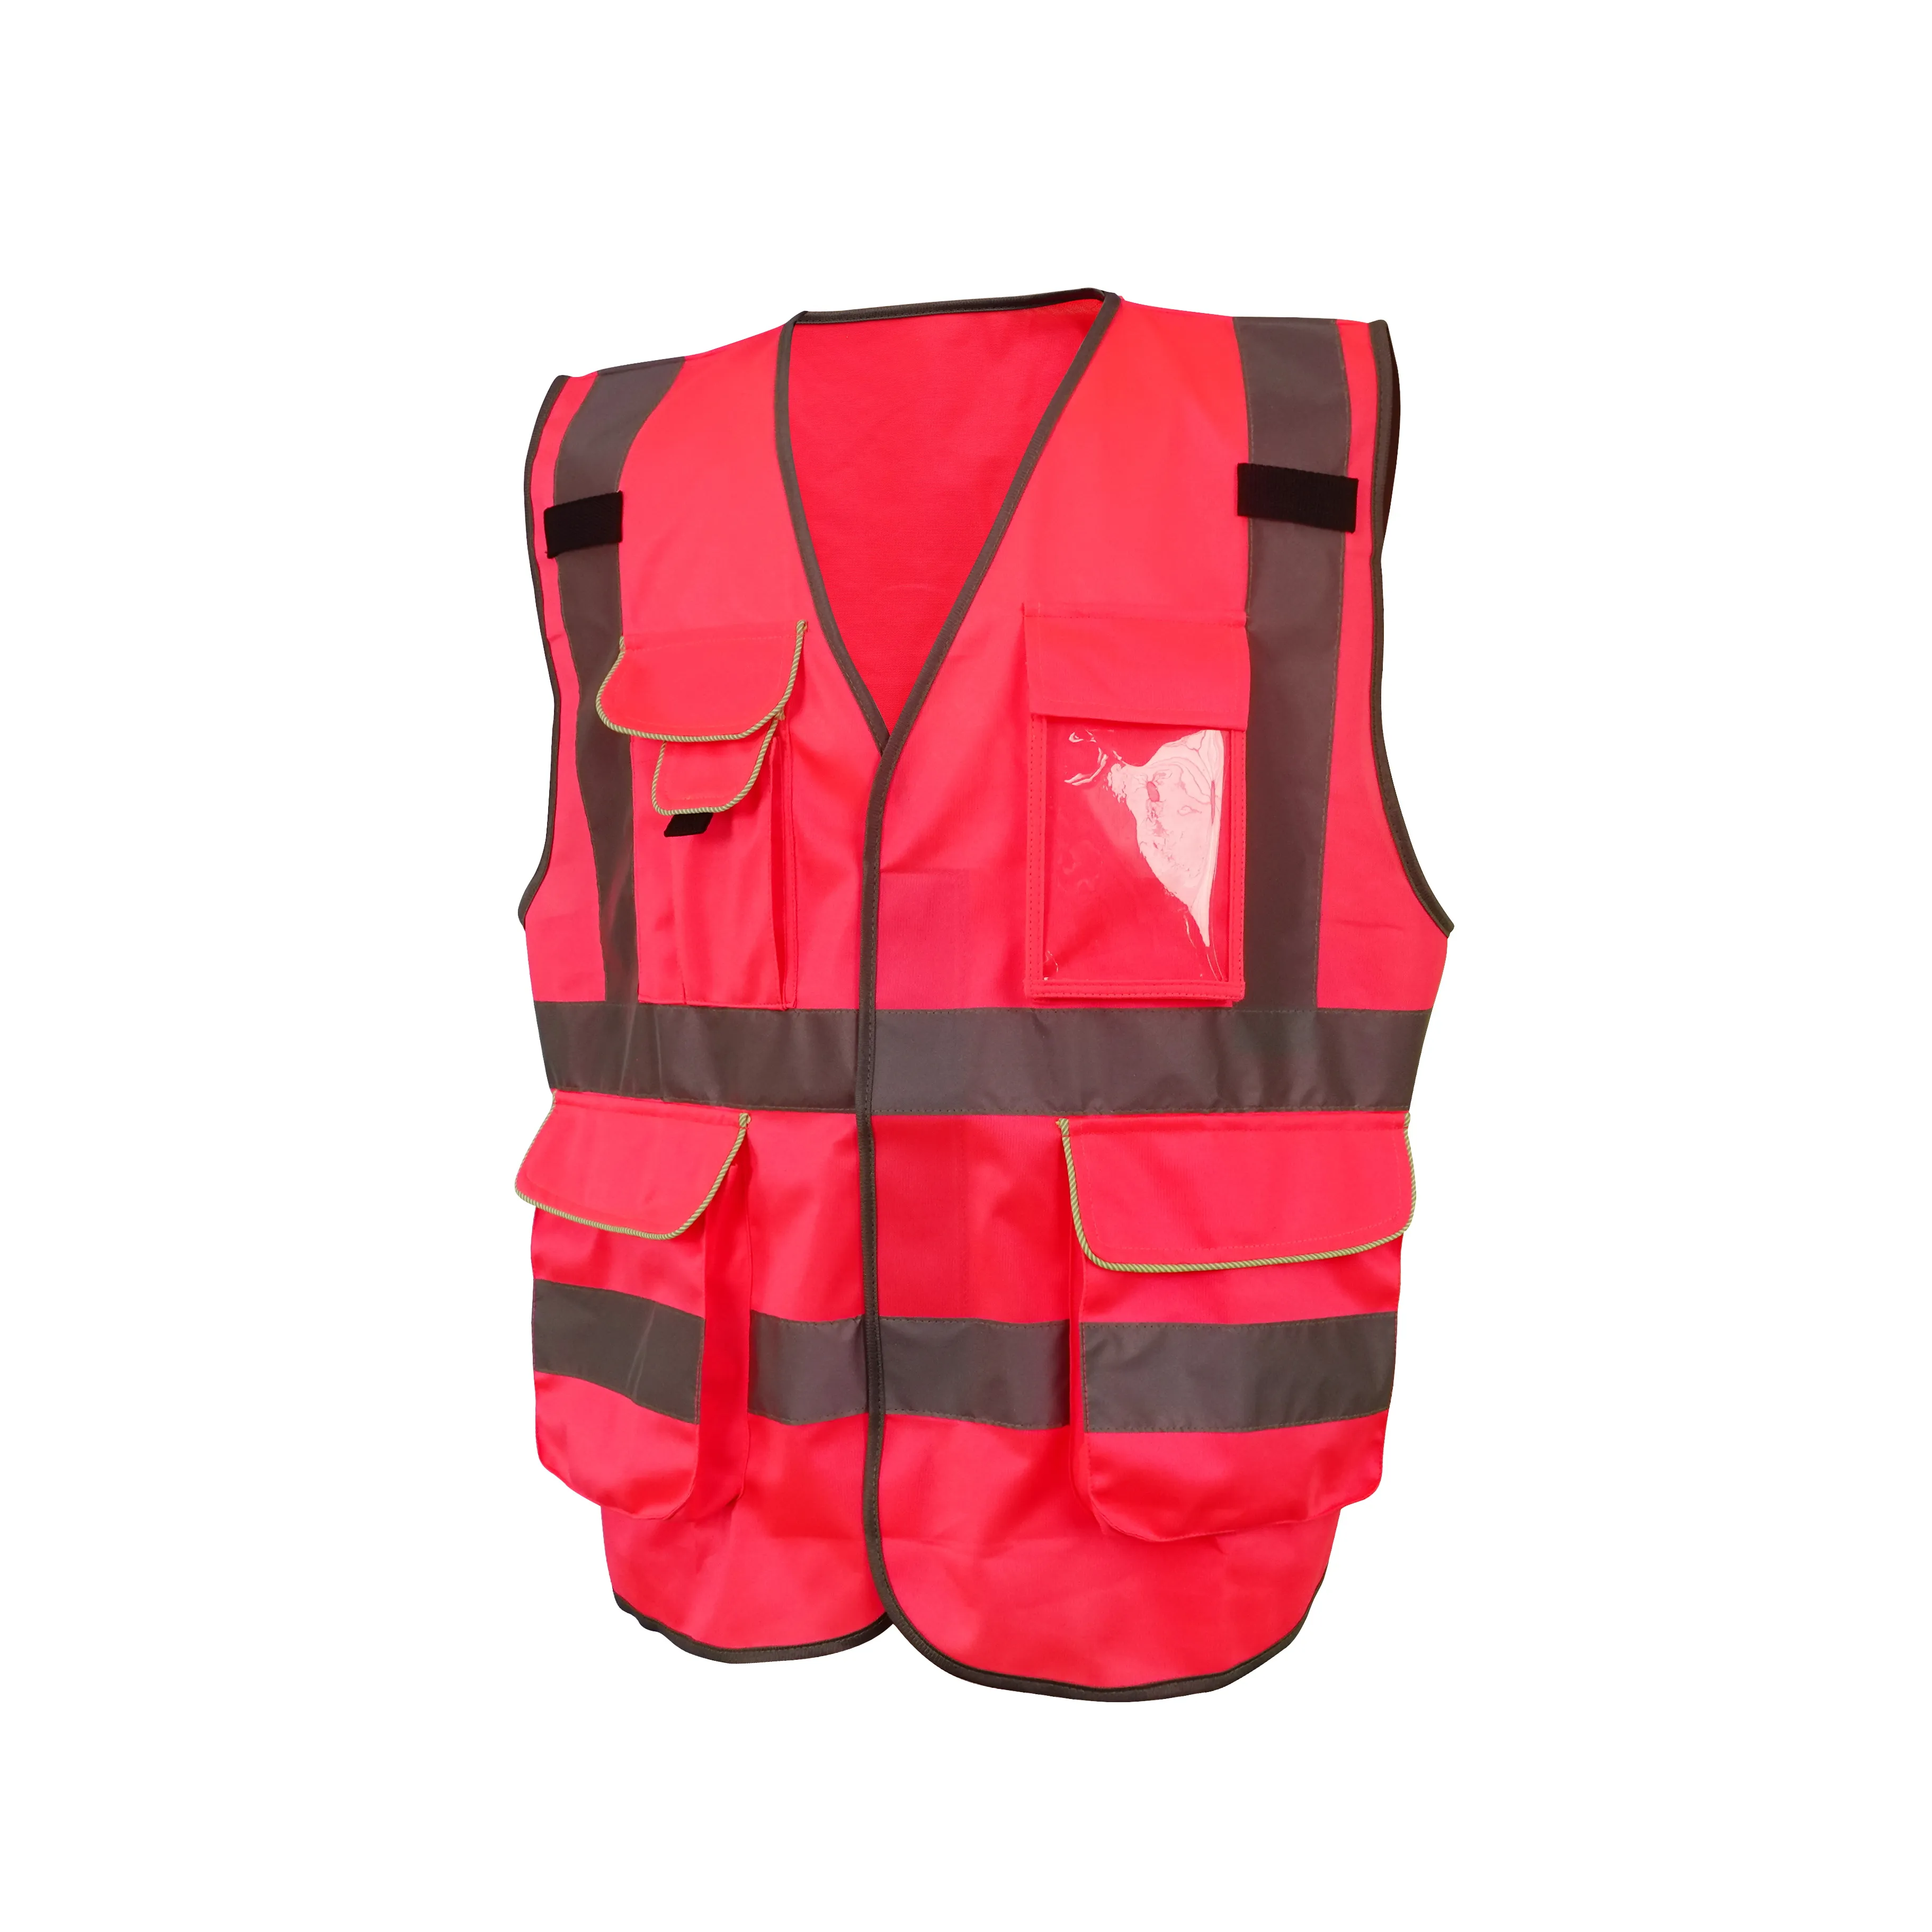 LX güvenlik yelek çalışma yansıtıcı güvenlik yelek sarı siyah kırmızı yansıtıcı Hi Vis giyim cepler ile